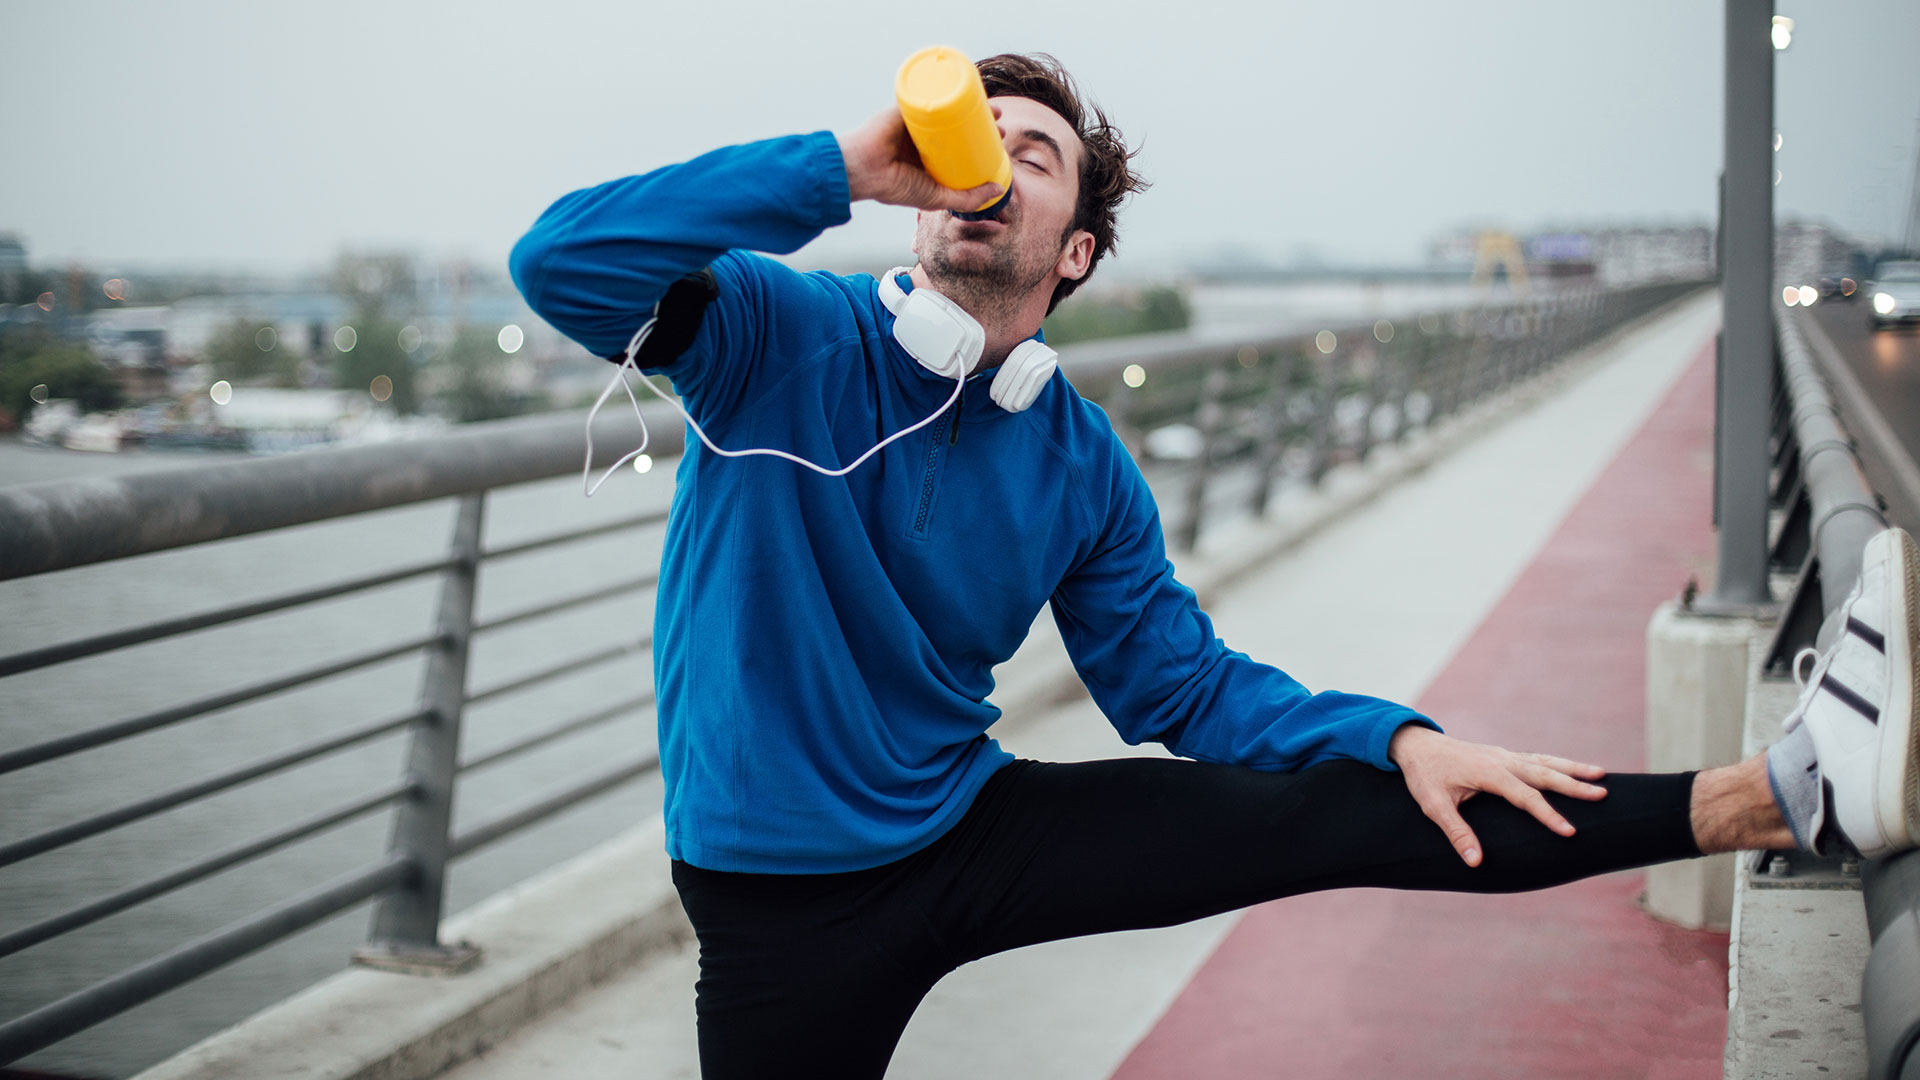 Beber 8 vasos de agua, consumir frutas y verduras, evitar el alcohol y los embutidos y realizar más actividad física son algunas de las recomendaciones de la licenciada en nutrición Romina Pereiro (Getty Images)